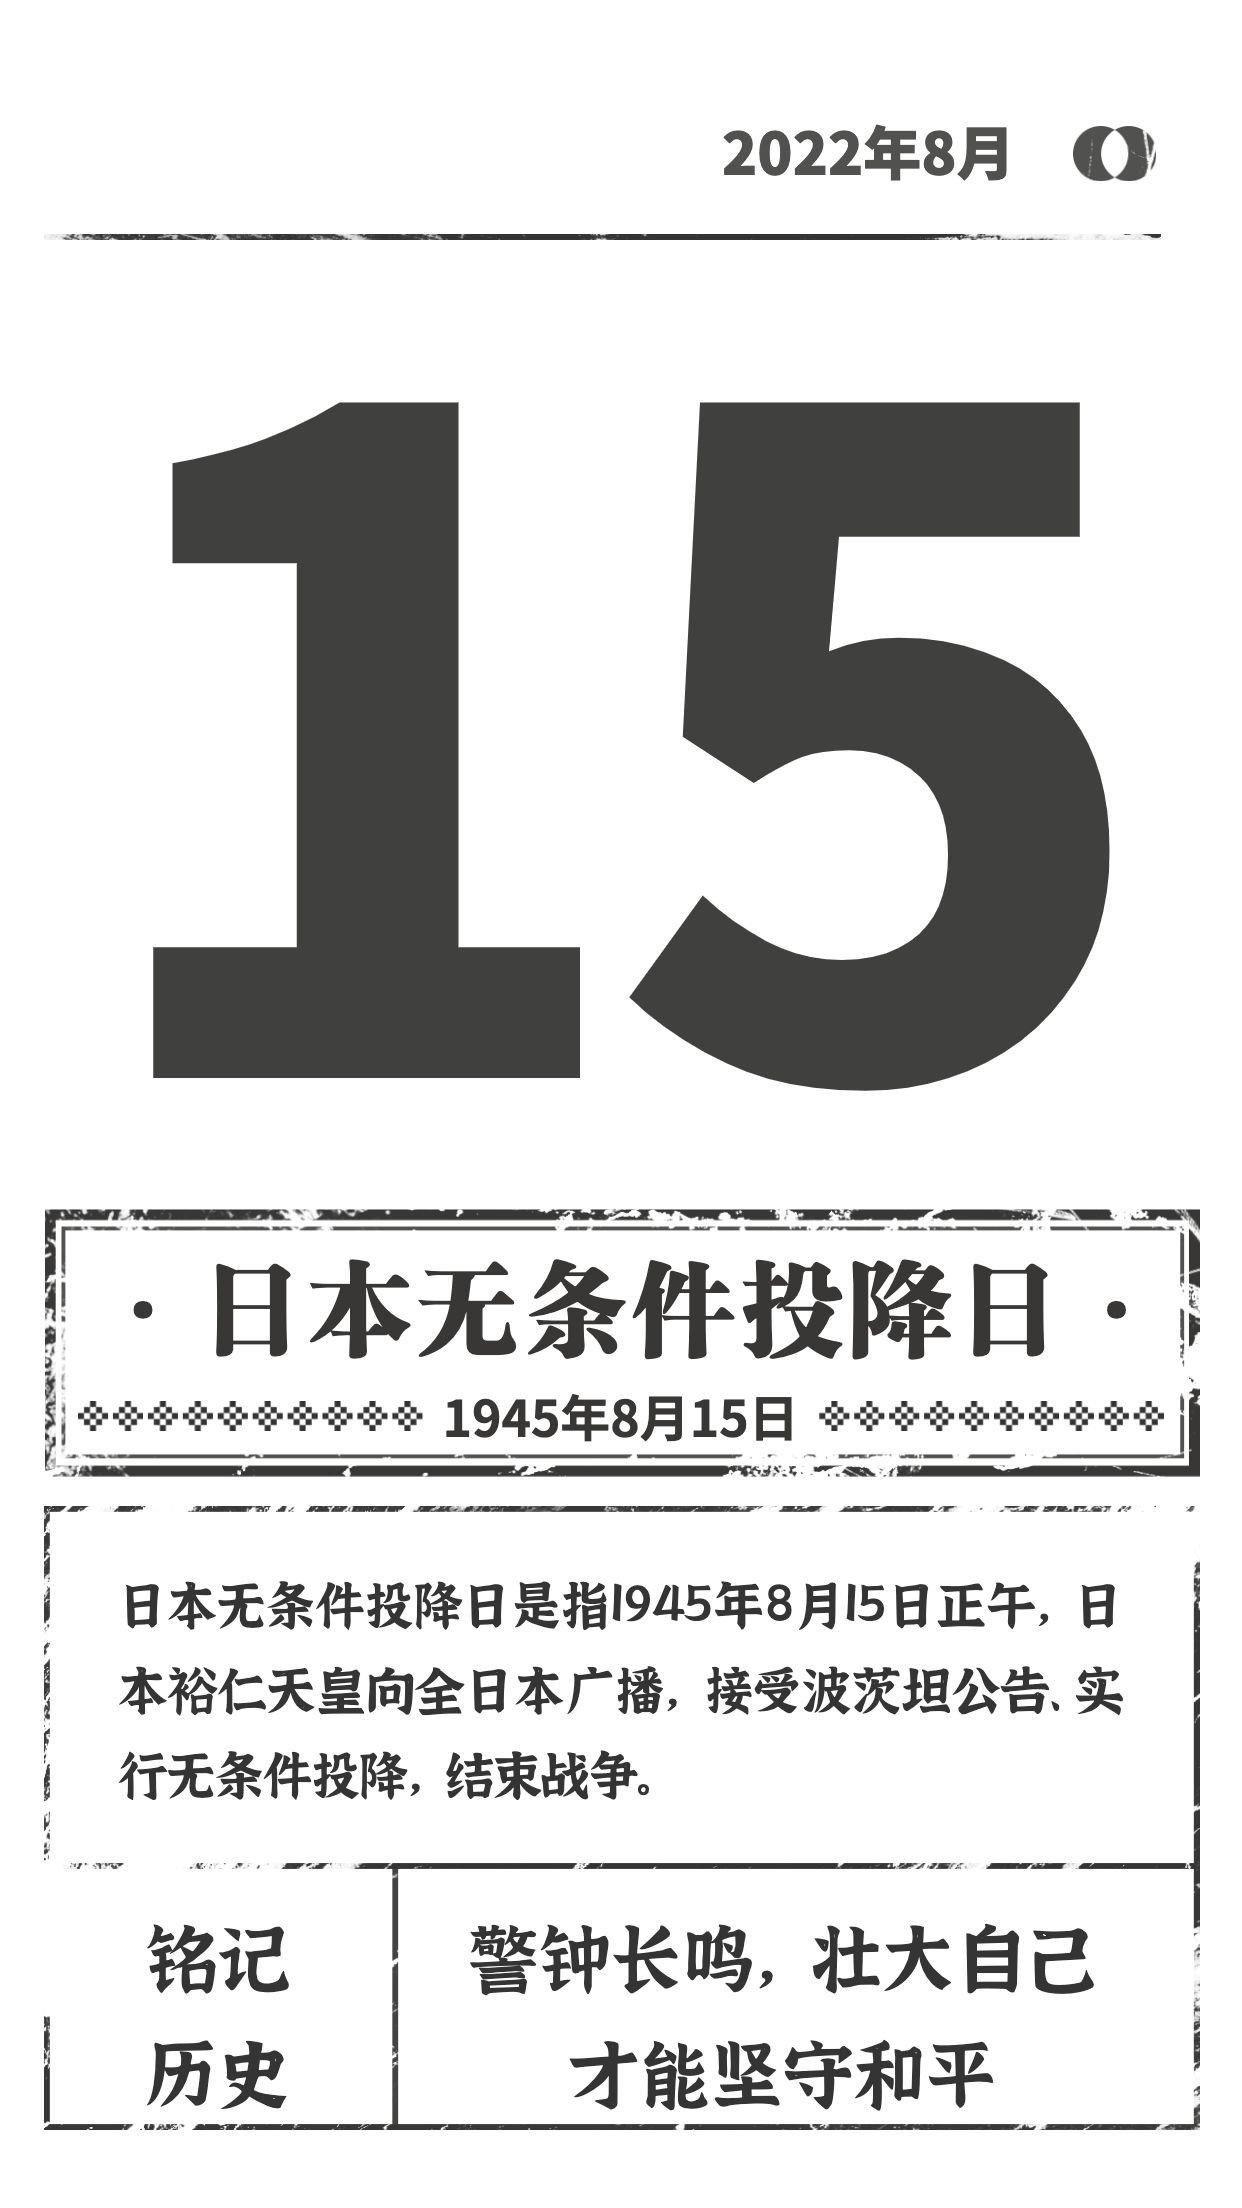 日本投降纪念日仿旧报纸手机海报